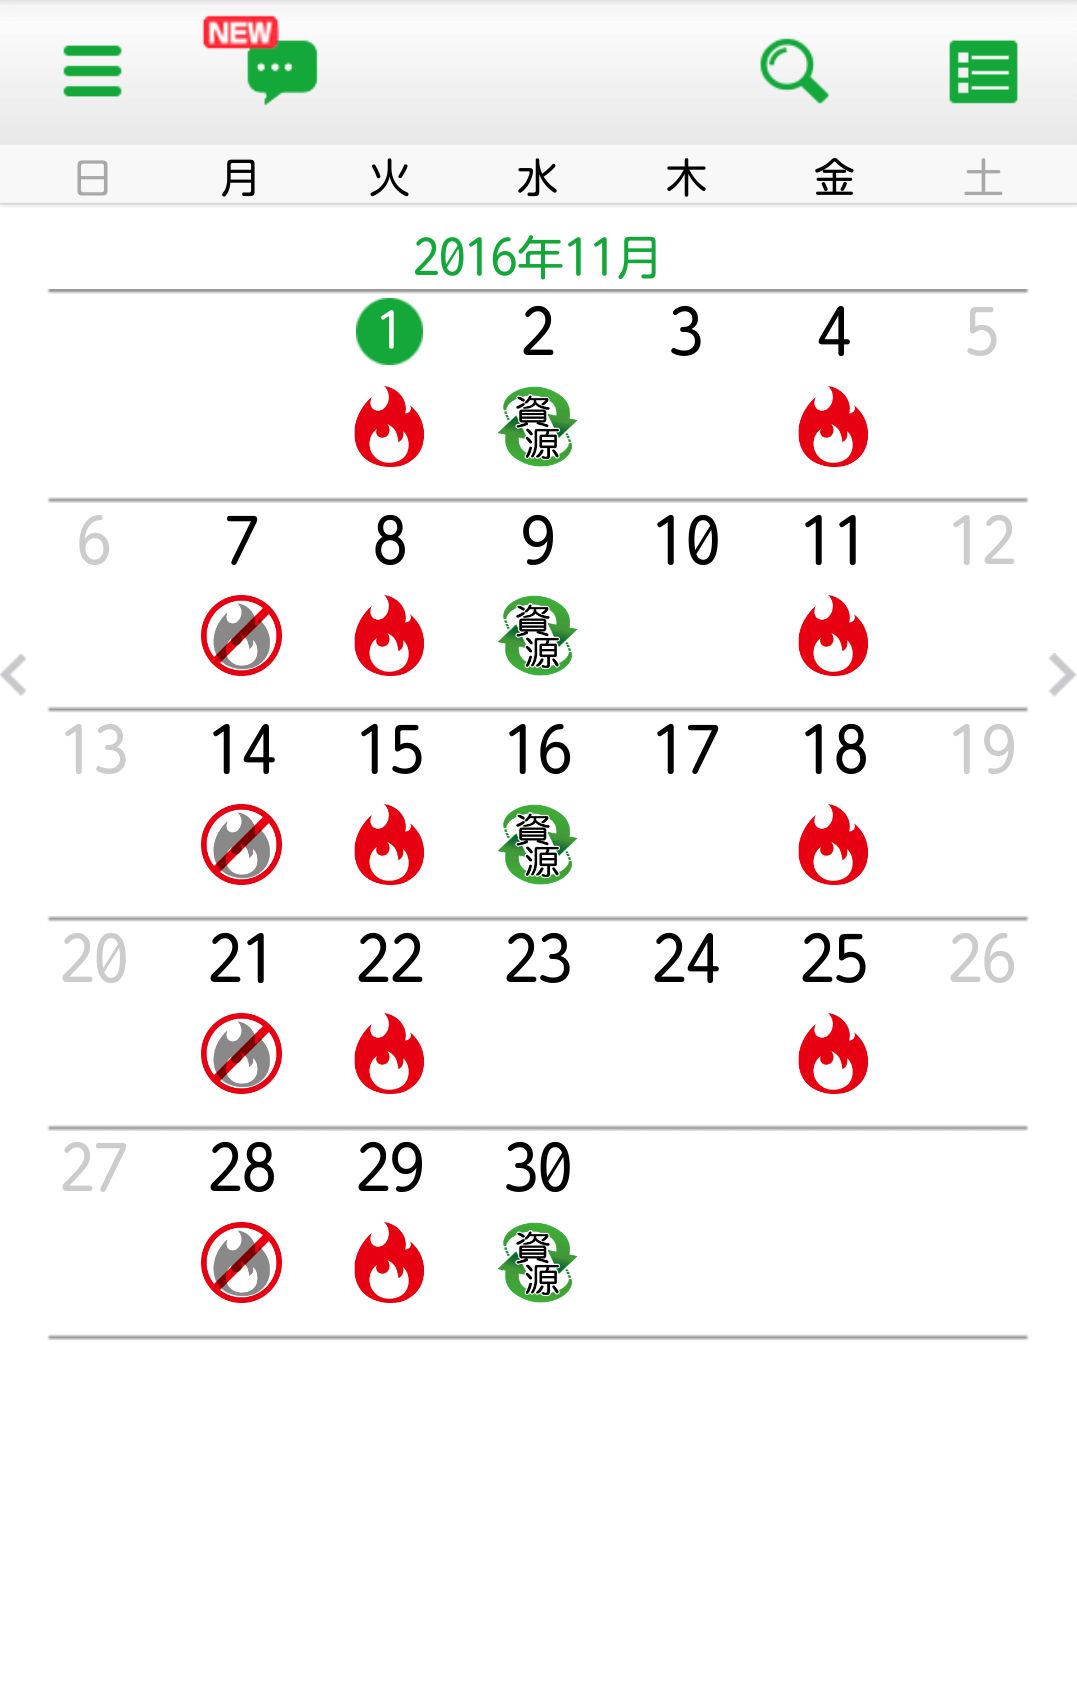 収集日カレンダー画面の画像